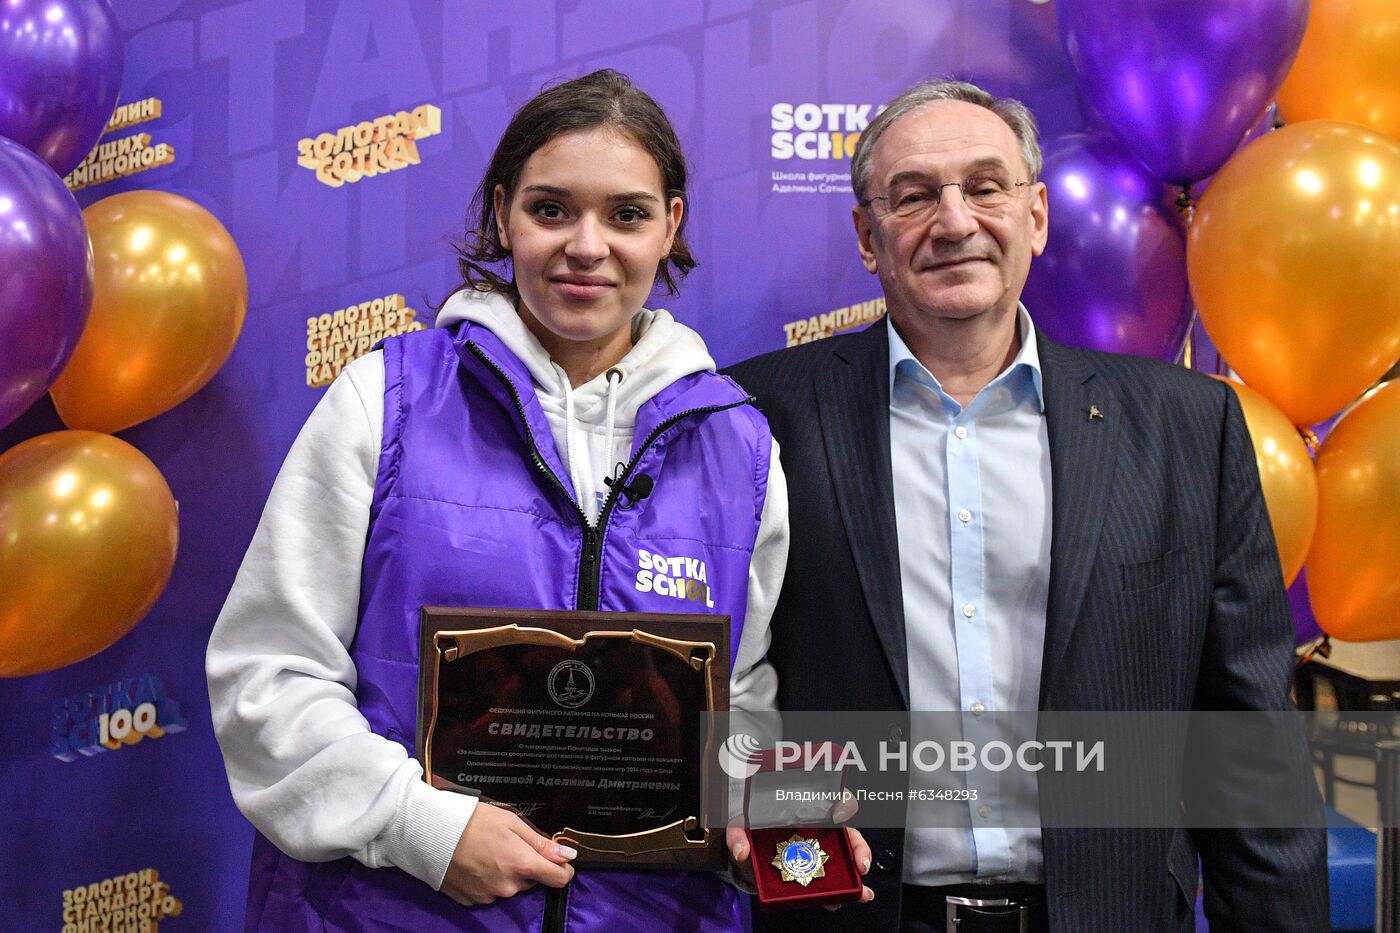 Открытие школы фигурного катания А. Сотниковой